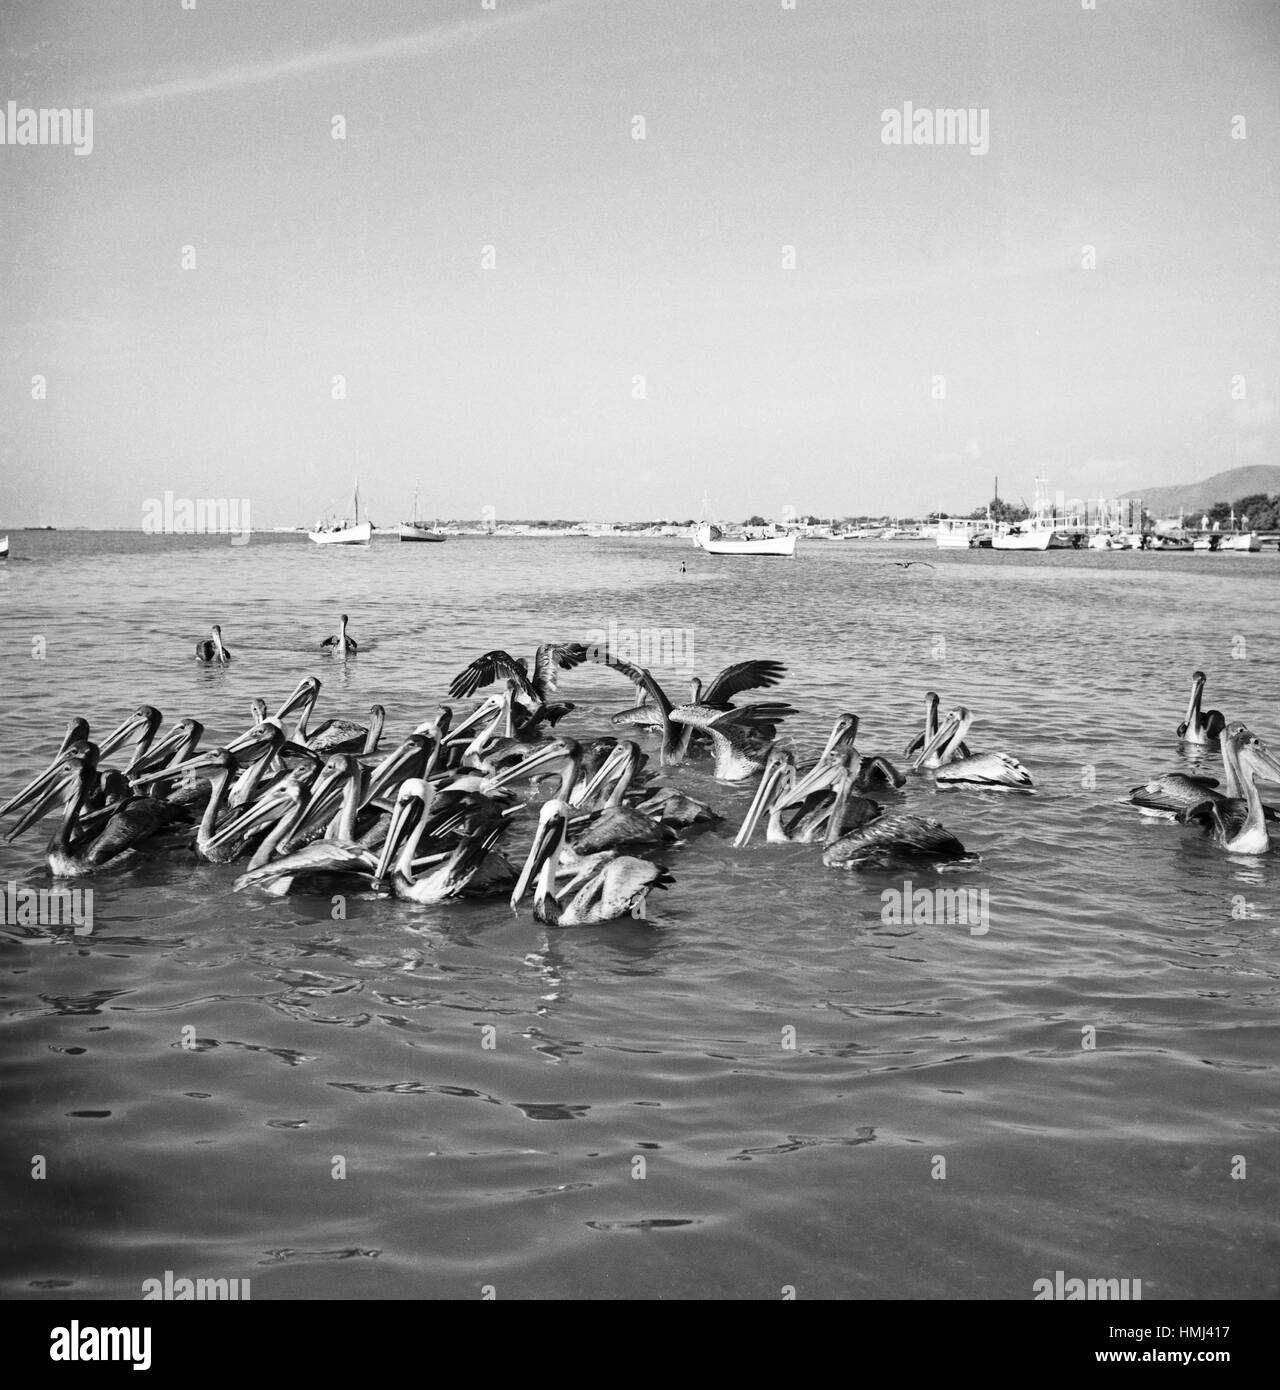 Pelikane am Ufer der Isla Margarita, Venezuela 1966. Pelican accanto alla costa di Isla Margarita, Venezuela 1966. Foto Stock